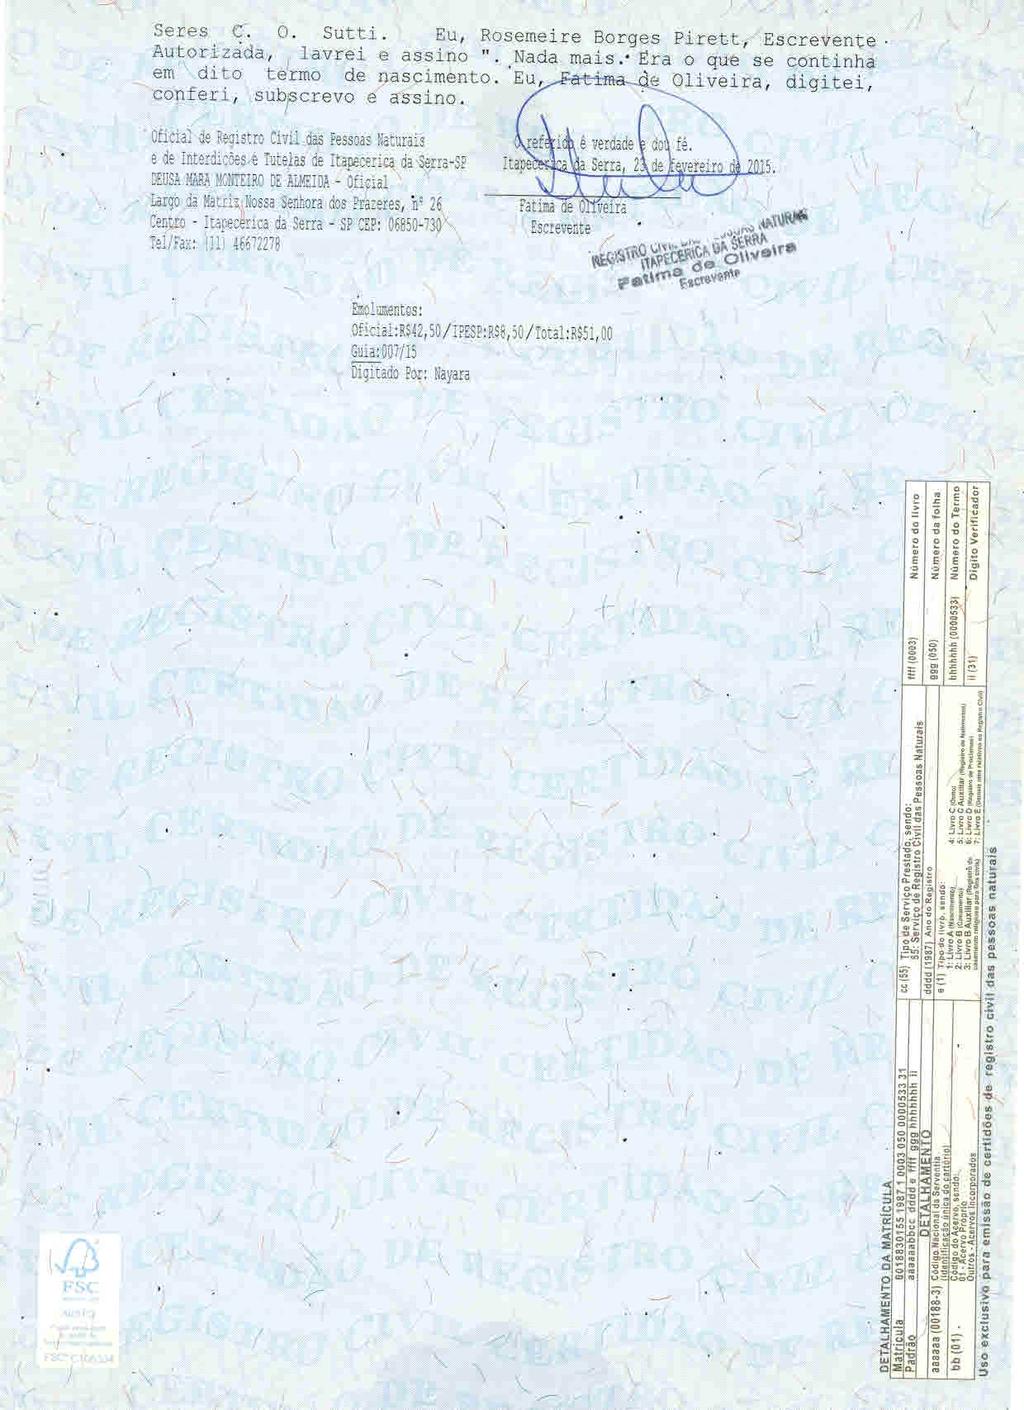 fls. 62 Este documento é cópia do original, assinado digitalmente por CECILIA SILVEIRA GONCALVES e Tribunal de Justica de Sao Paulo, protocolado em 23/03/2015 às 18:25, sob o número